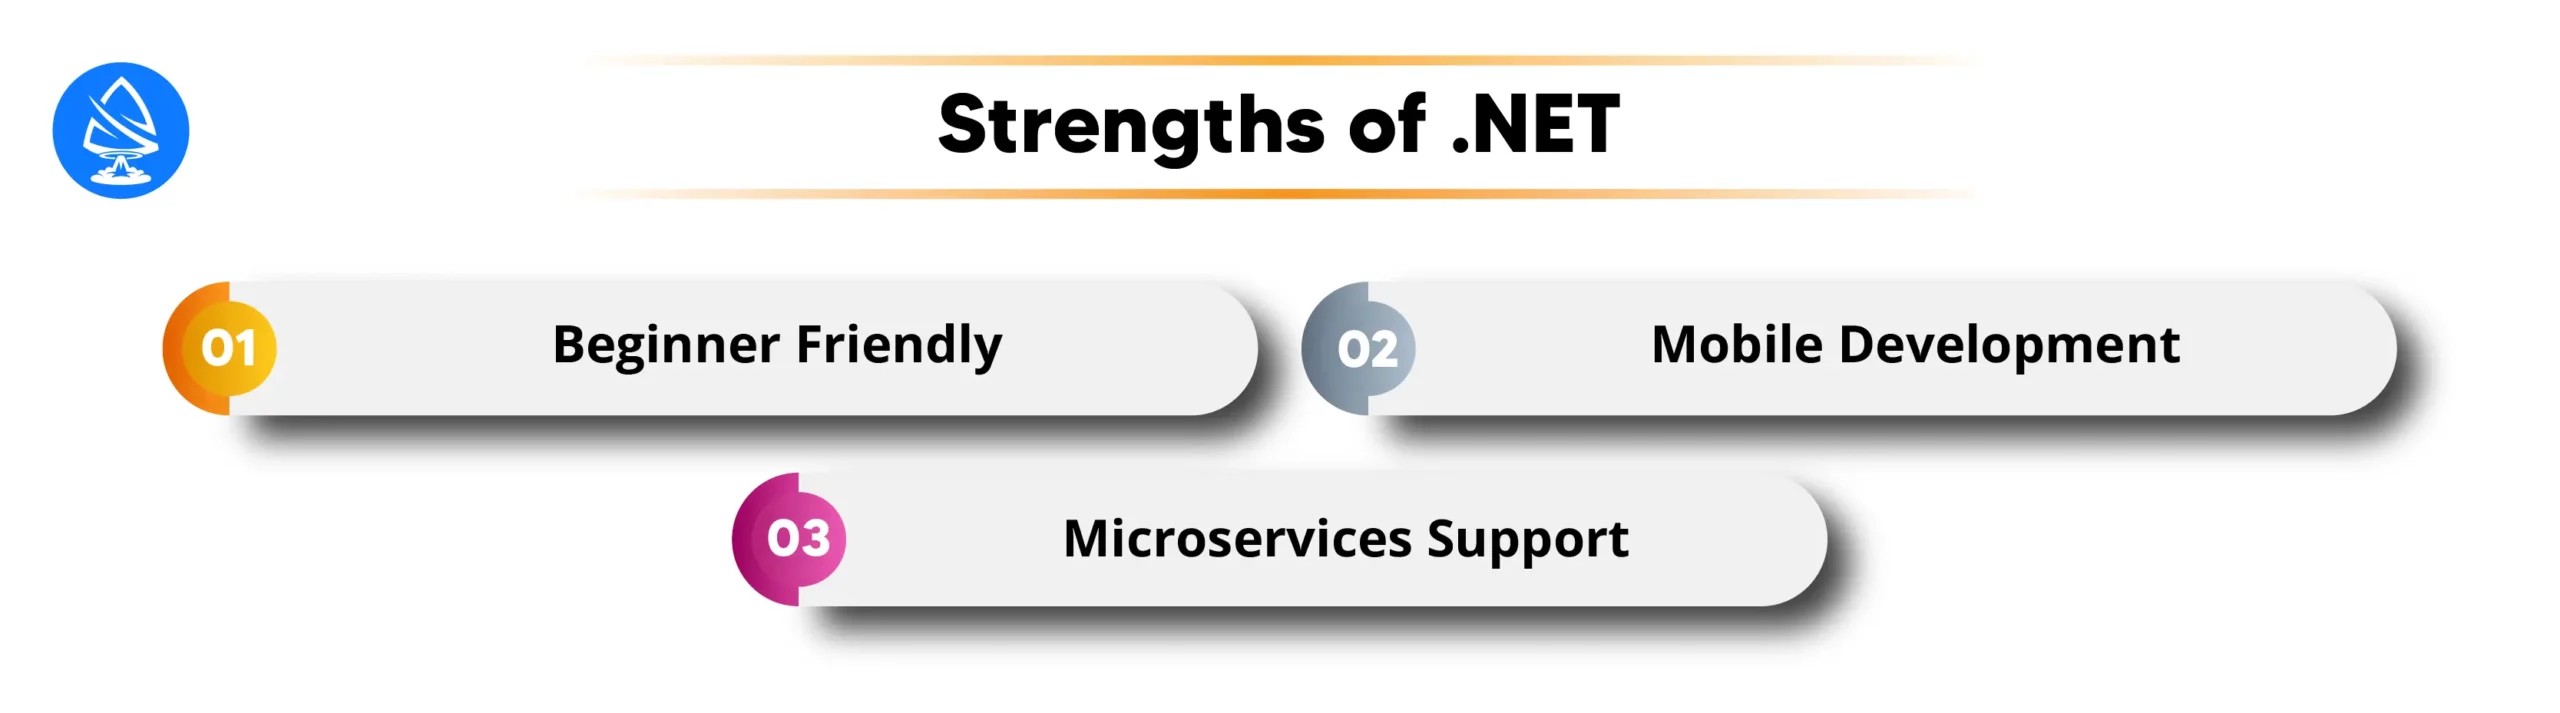 Strengths of .NET 